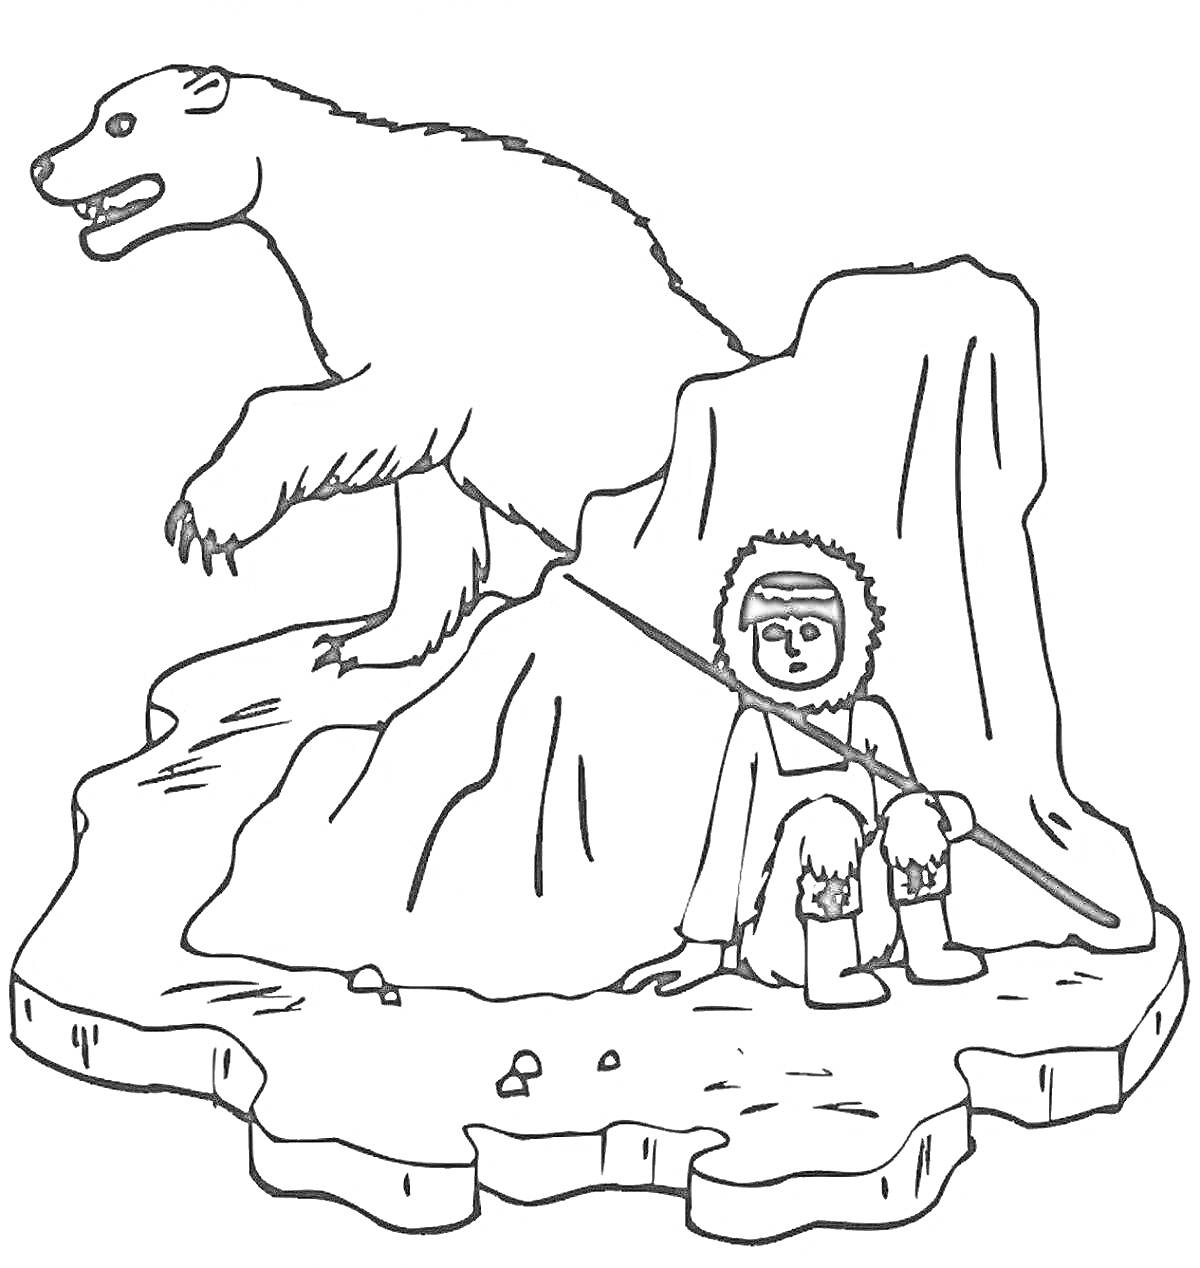 Раскраска Человек в одежде севера, сидящий на льдине рядом с медведем